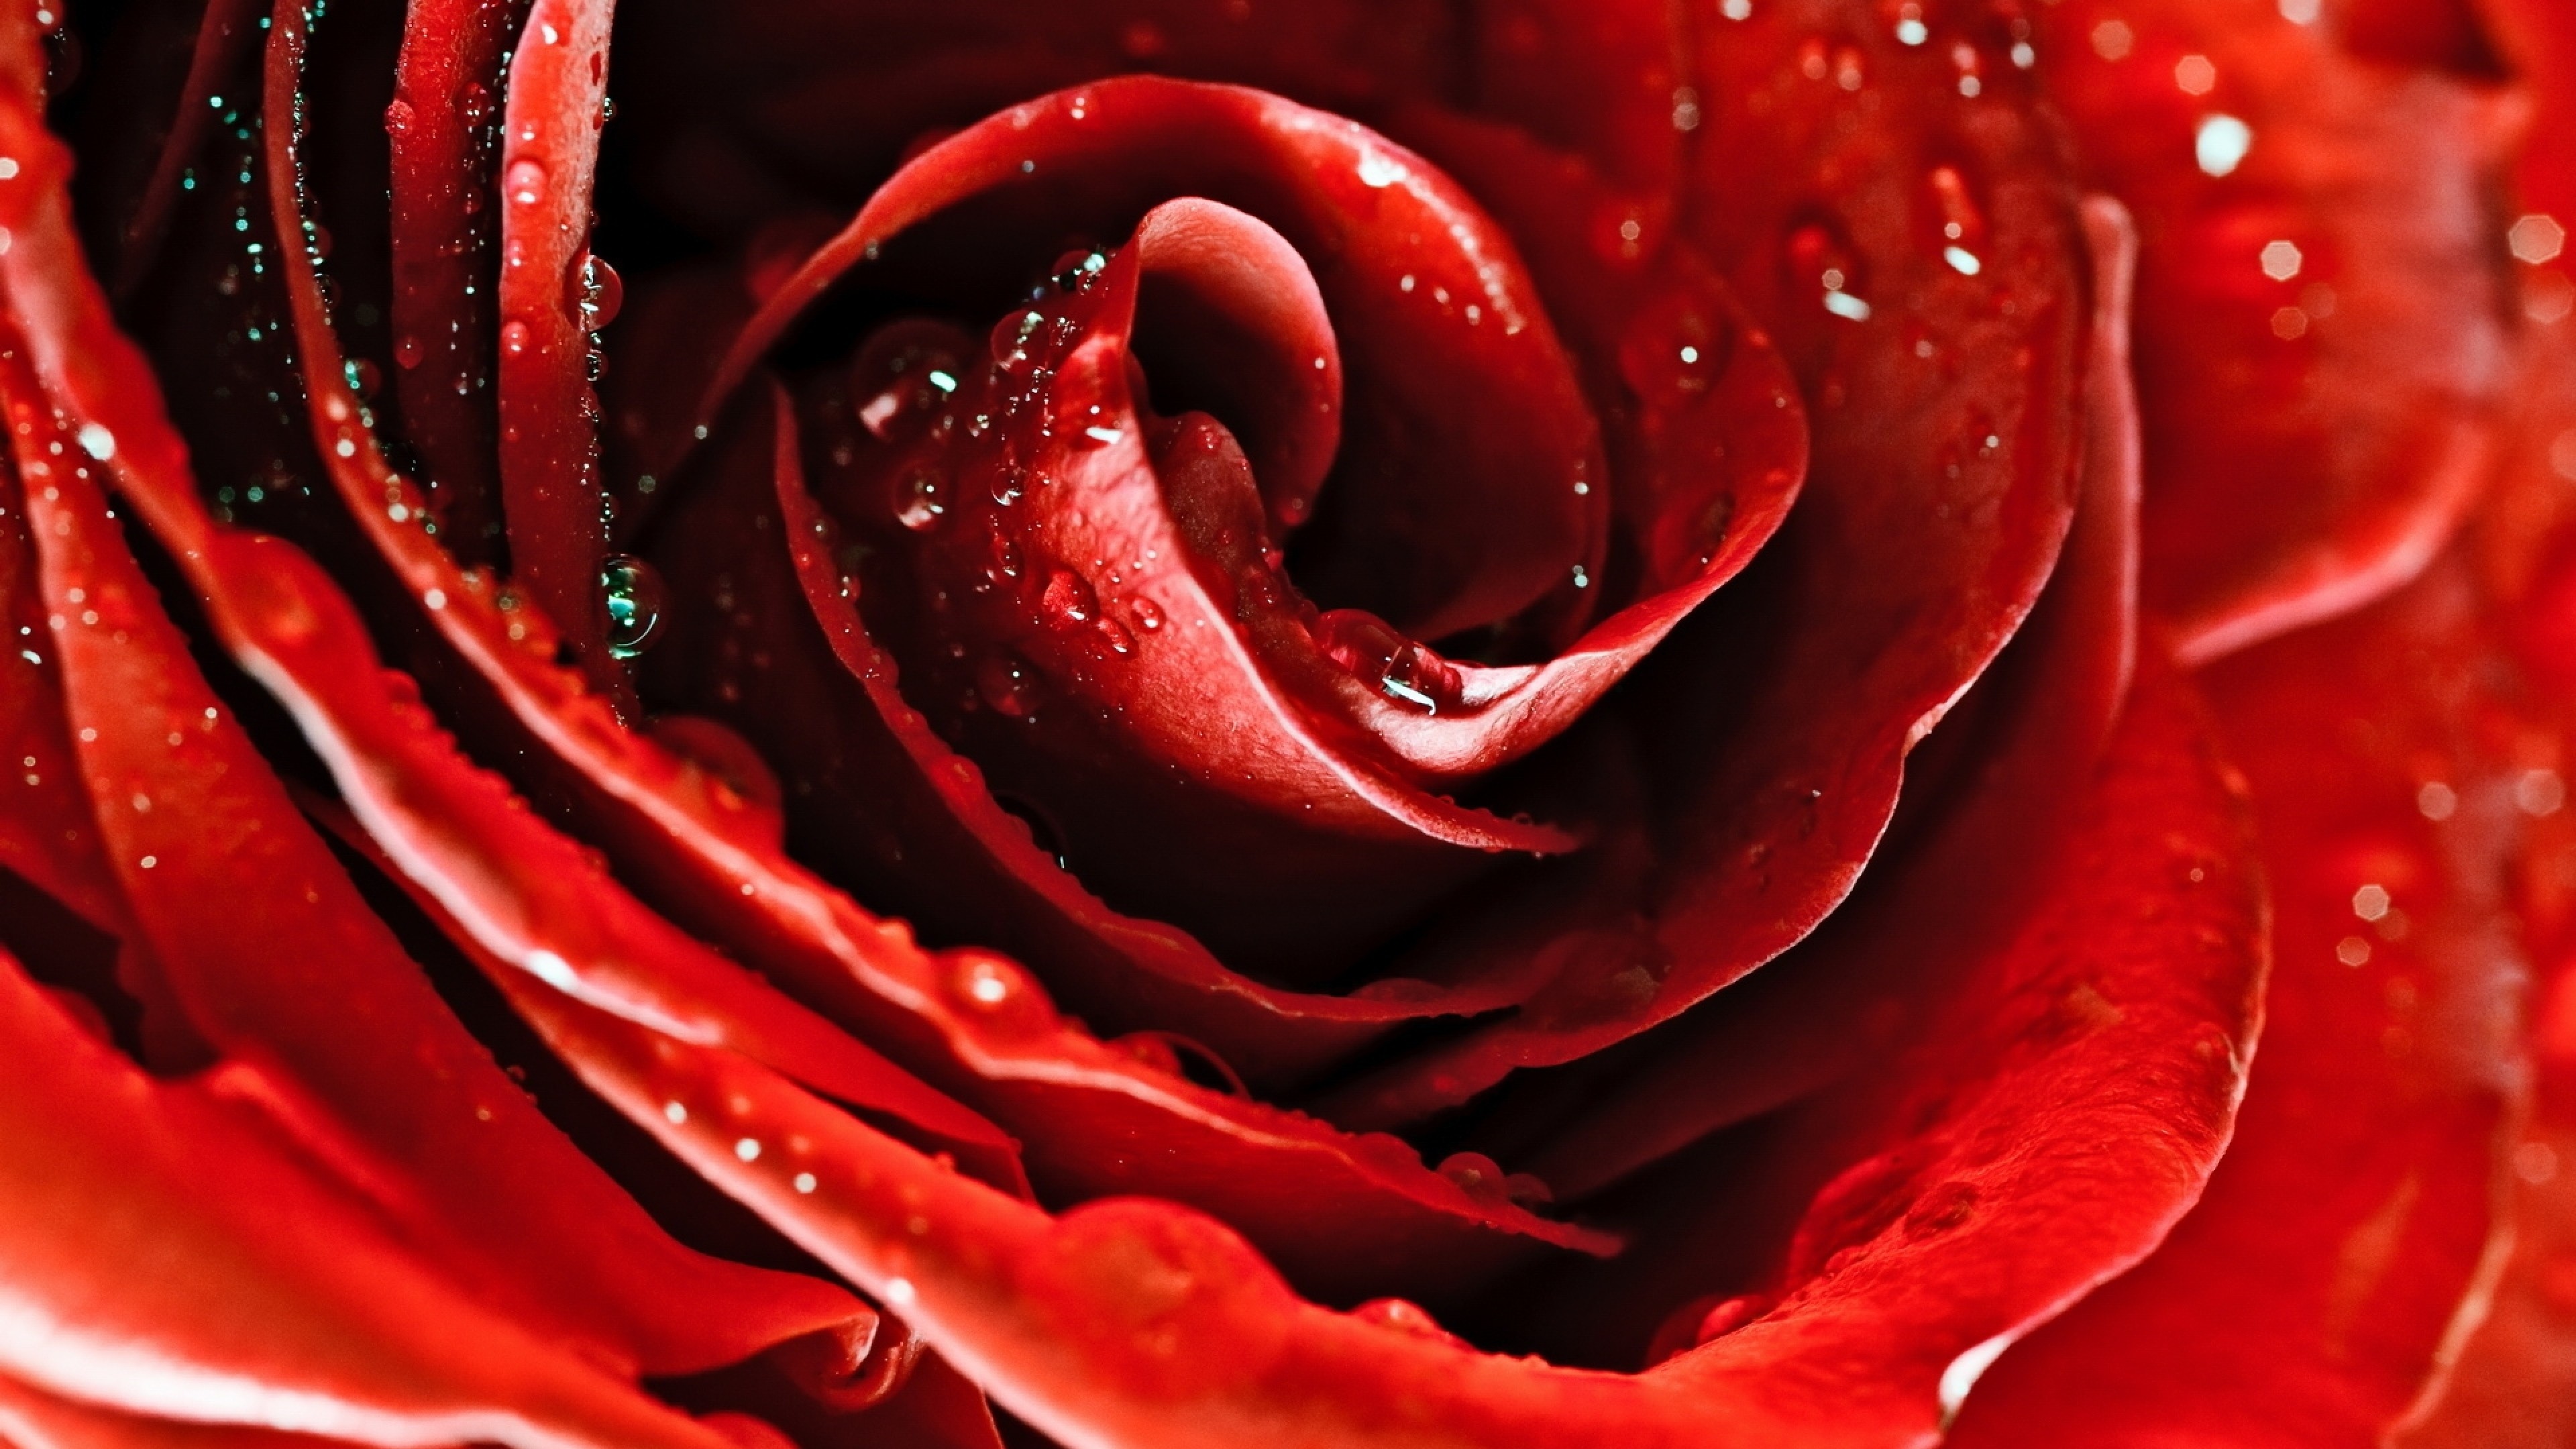 Картинка обои красная. Syntia Rose 1 декор 20х50. Красный цветок. Цветы красного цвета. Красивый красный.